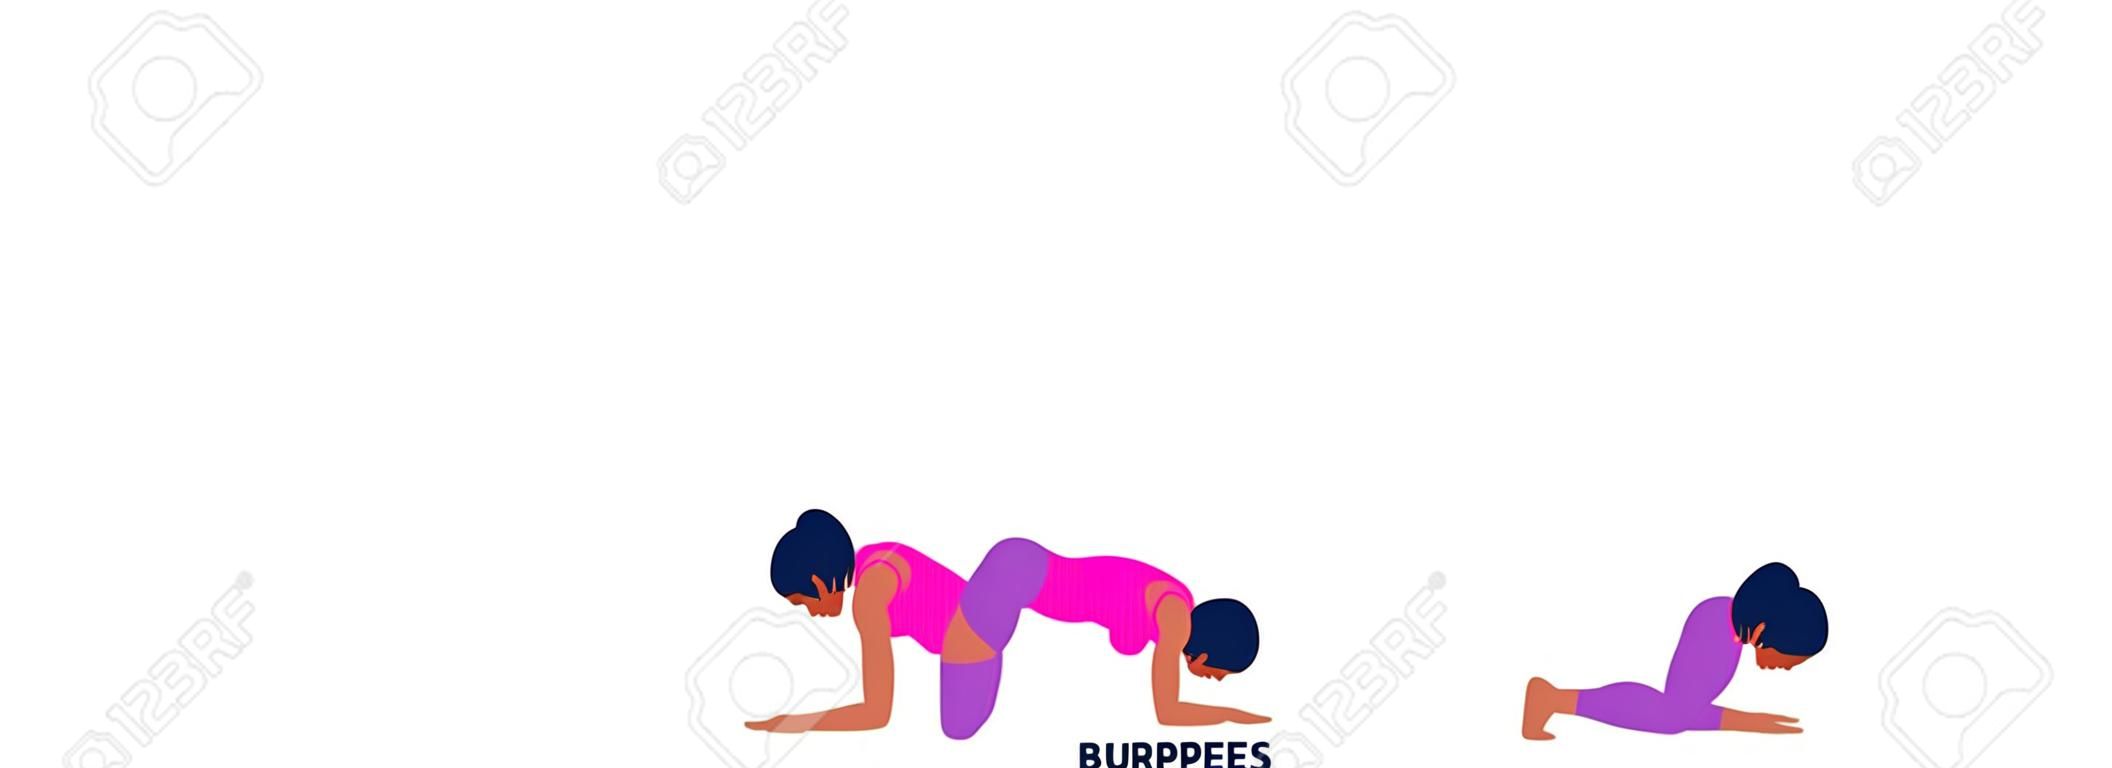 Burpee. Burpees. Sport exersice. Silhouetten van vrouwen die sporten. Workout, training Vector illustratie